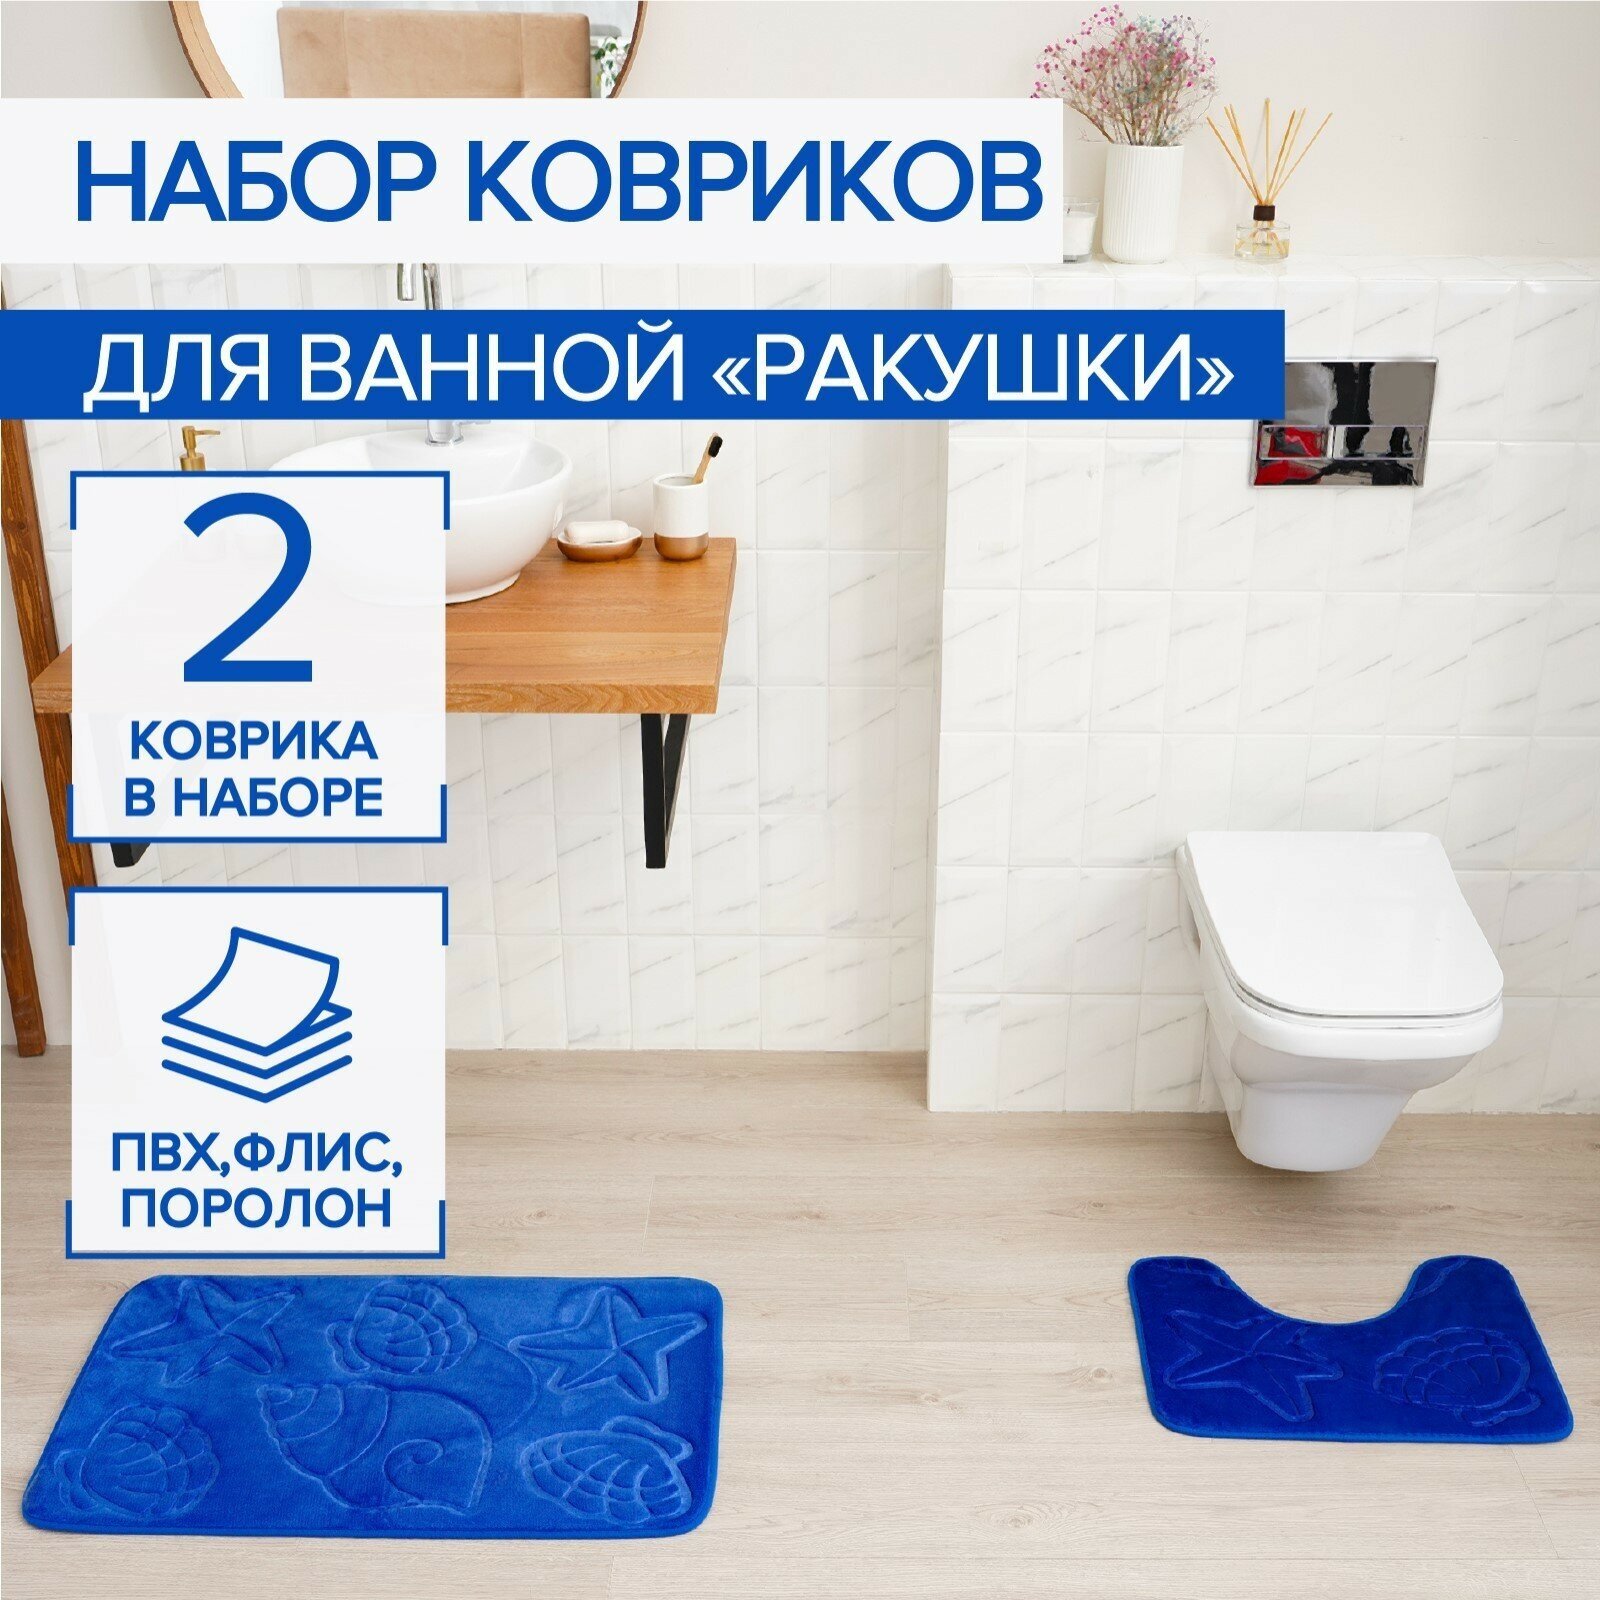 Набор ковриков для ванной и туалета Доляна «Ракушки», объёмные, 2 шт, 40×50, 50×80 см, цвет синий